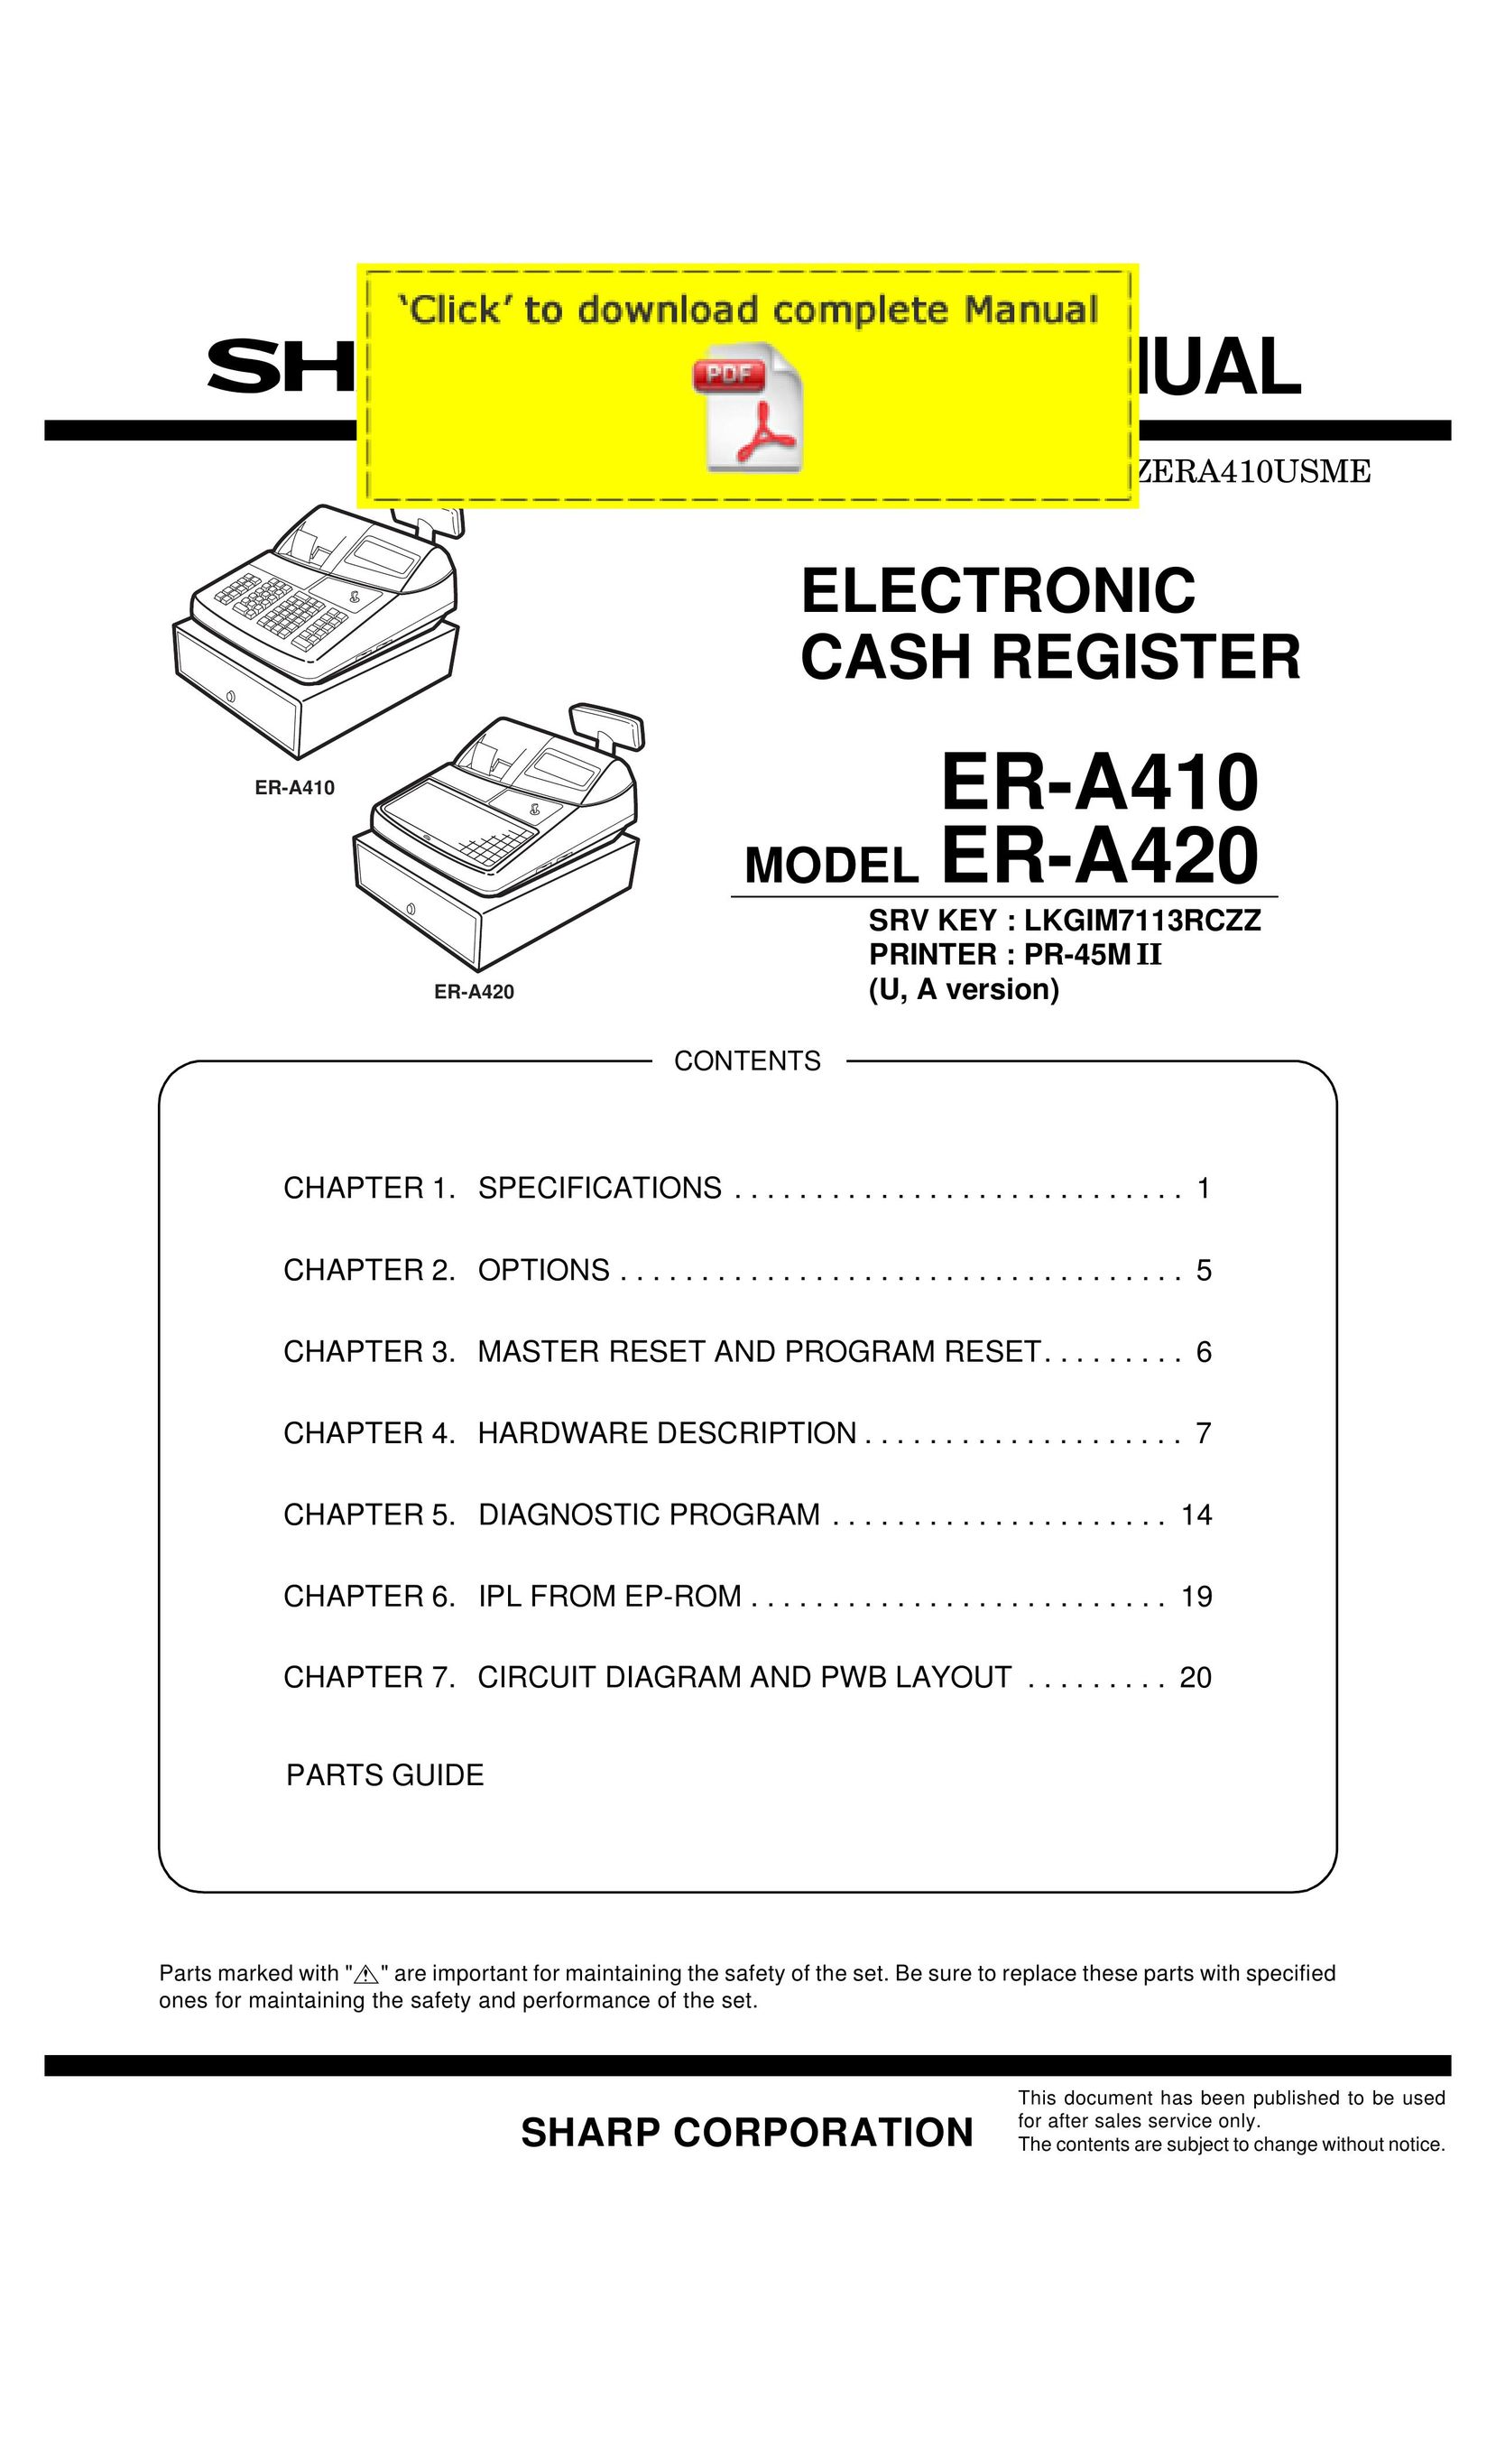 Sharp er-a410 Cash Register User Manual